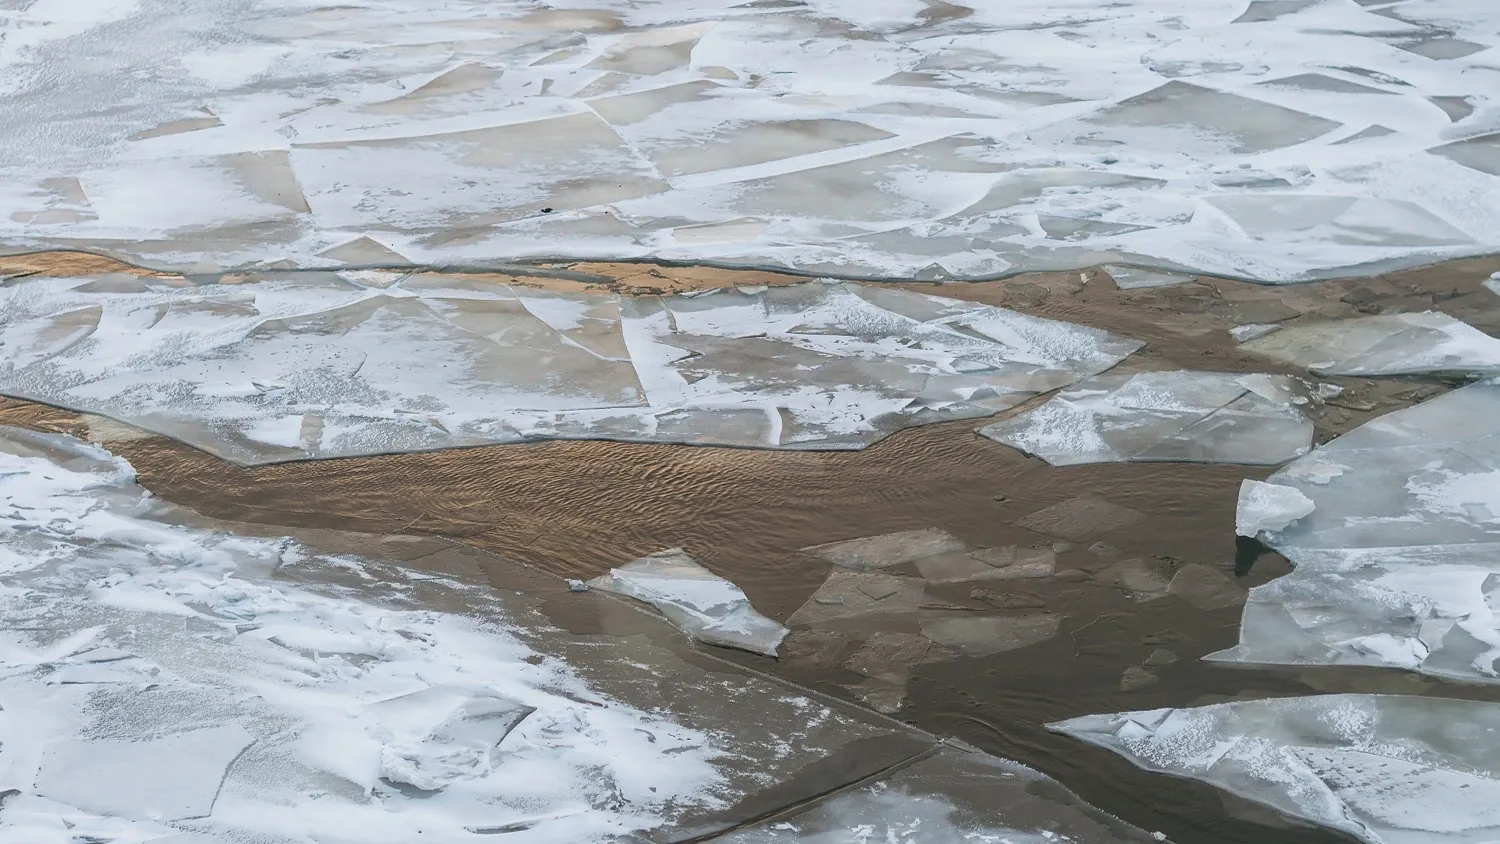 Лёд на ямальских реках только намерзает, выезжать на него - опасно для жизни. Фото: Dorozhkina Anna / shutterstock / Fotodom